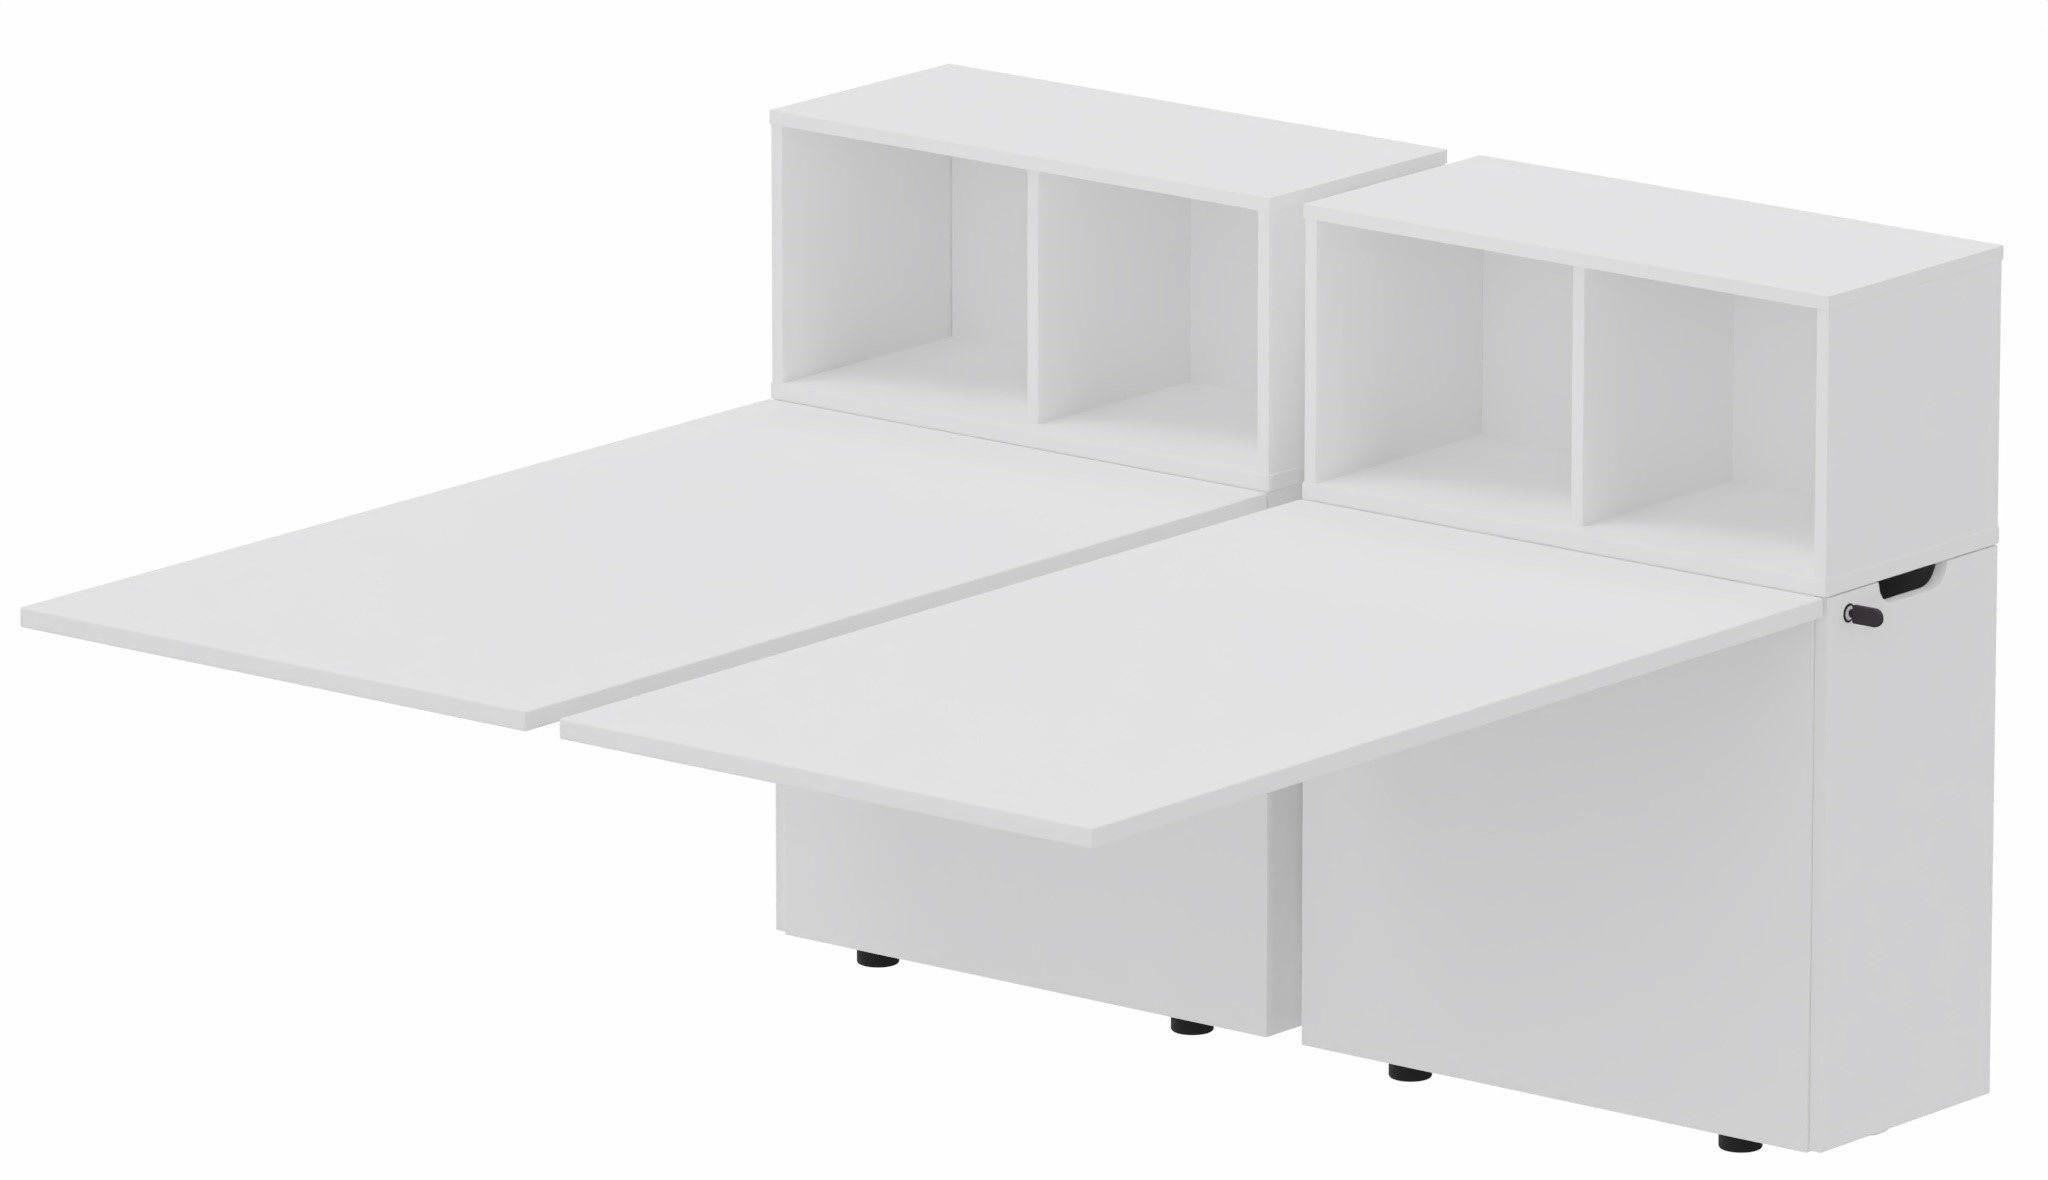 K8 Bench suivant avec niche sur rangement personnel 156x80cm encombrement 156x165cm, plateau blanc, structure blanc